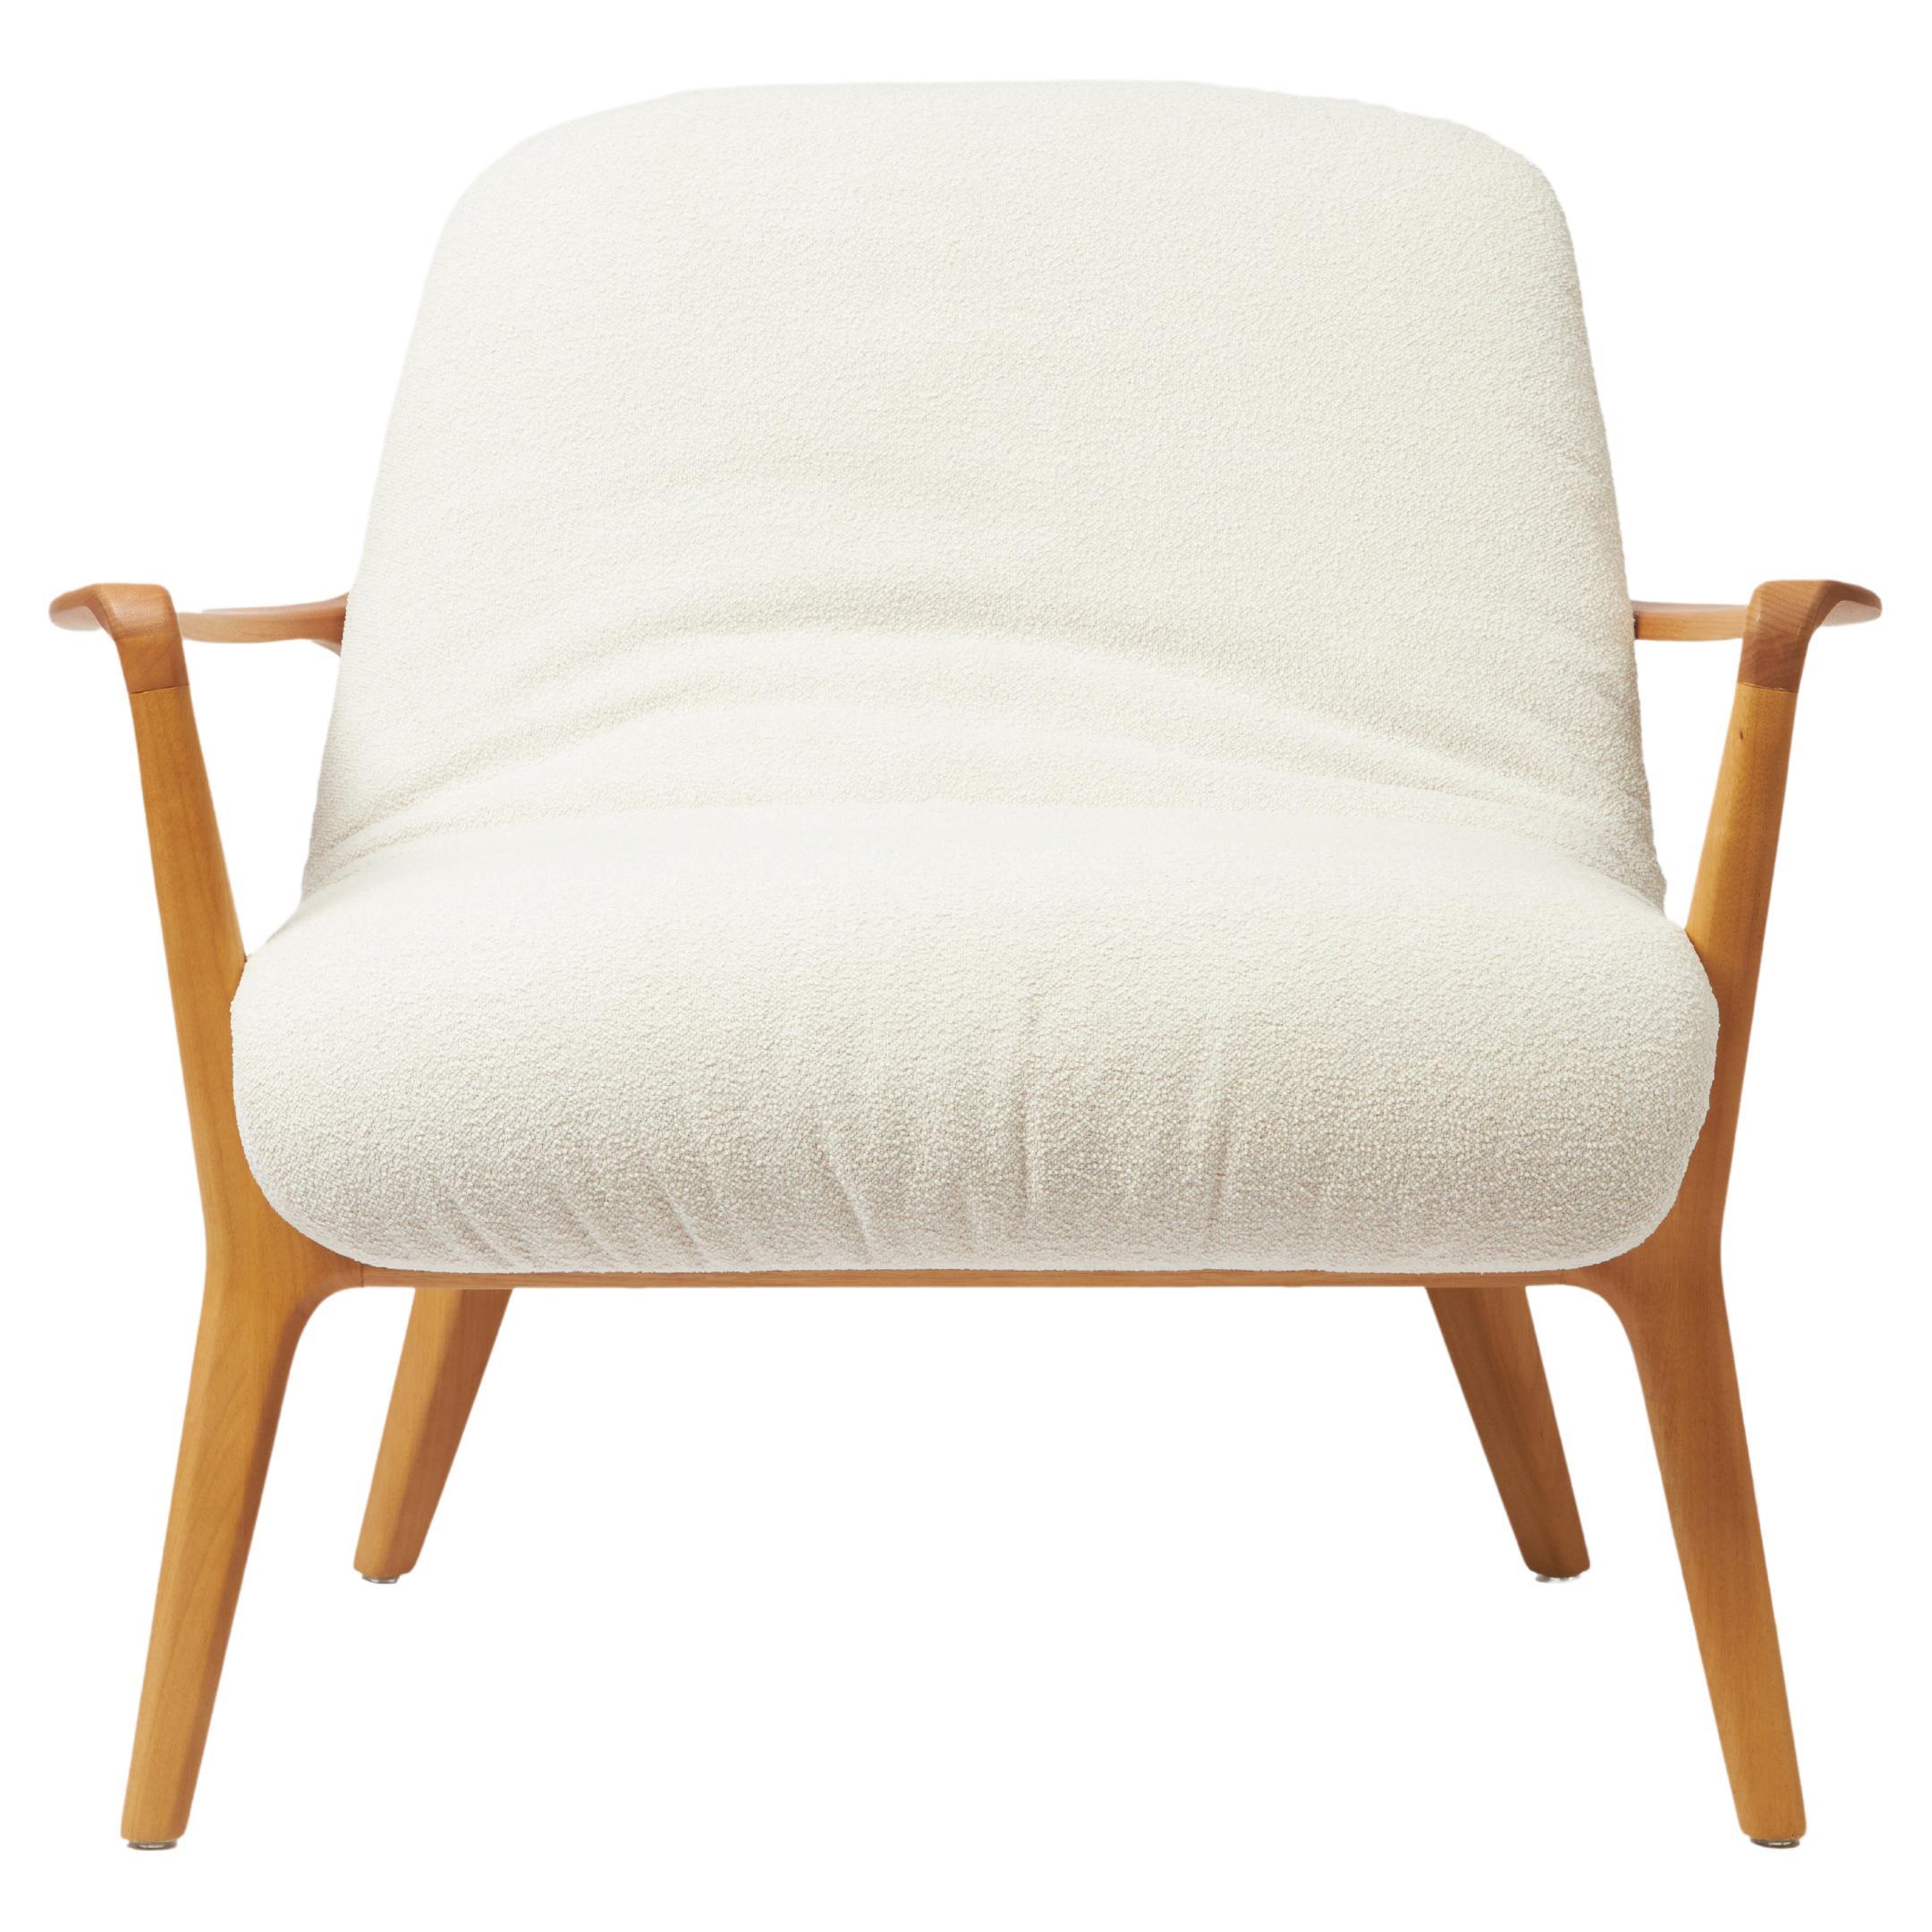 Sillón Insigne de estilo minimalista Esculpido en madera maciza, asiento textil